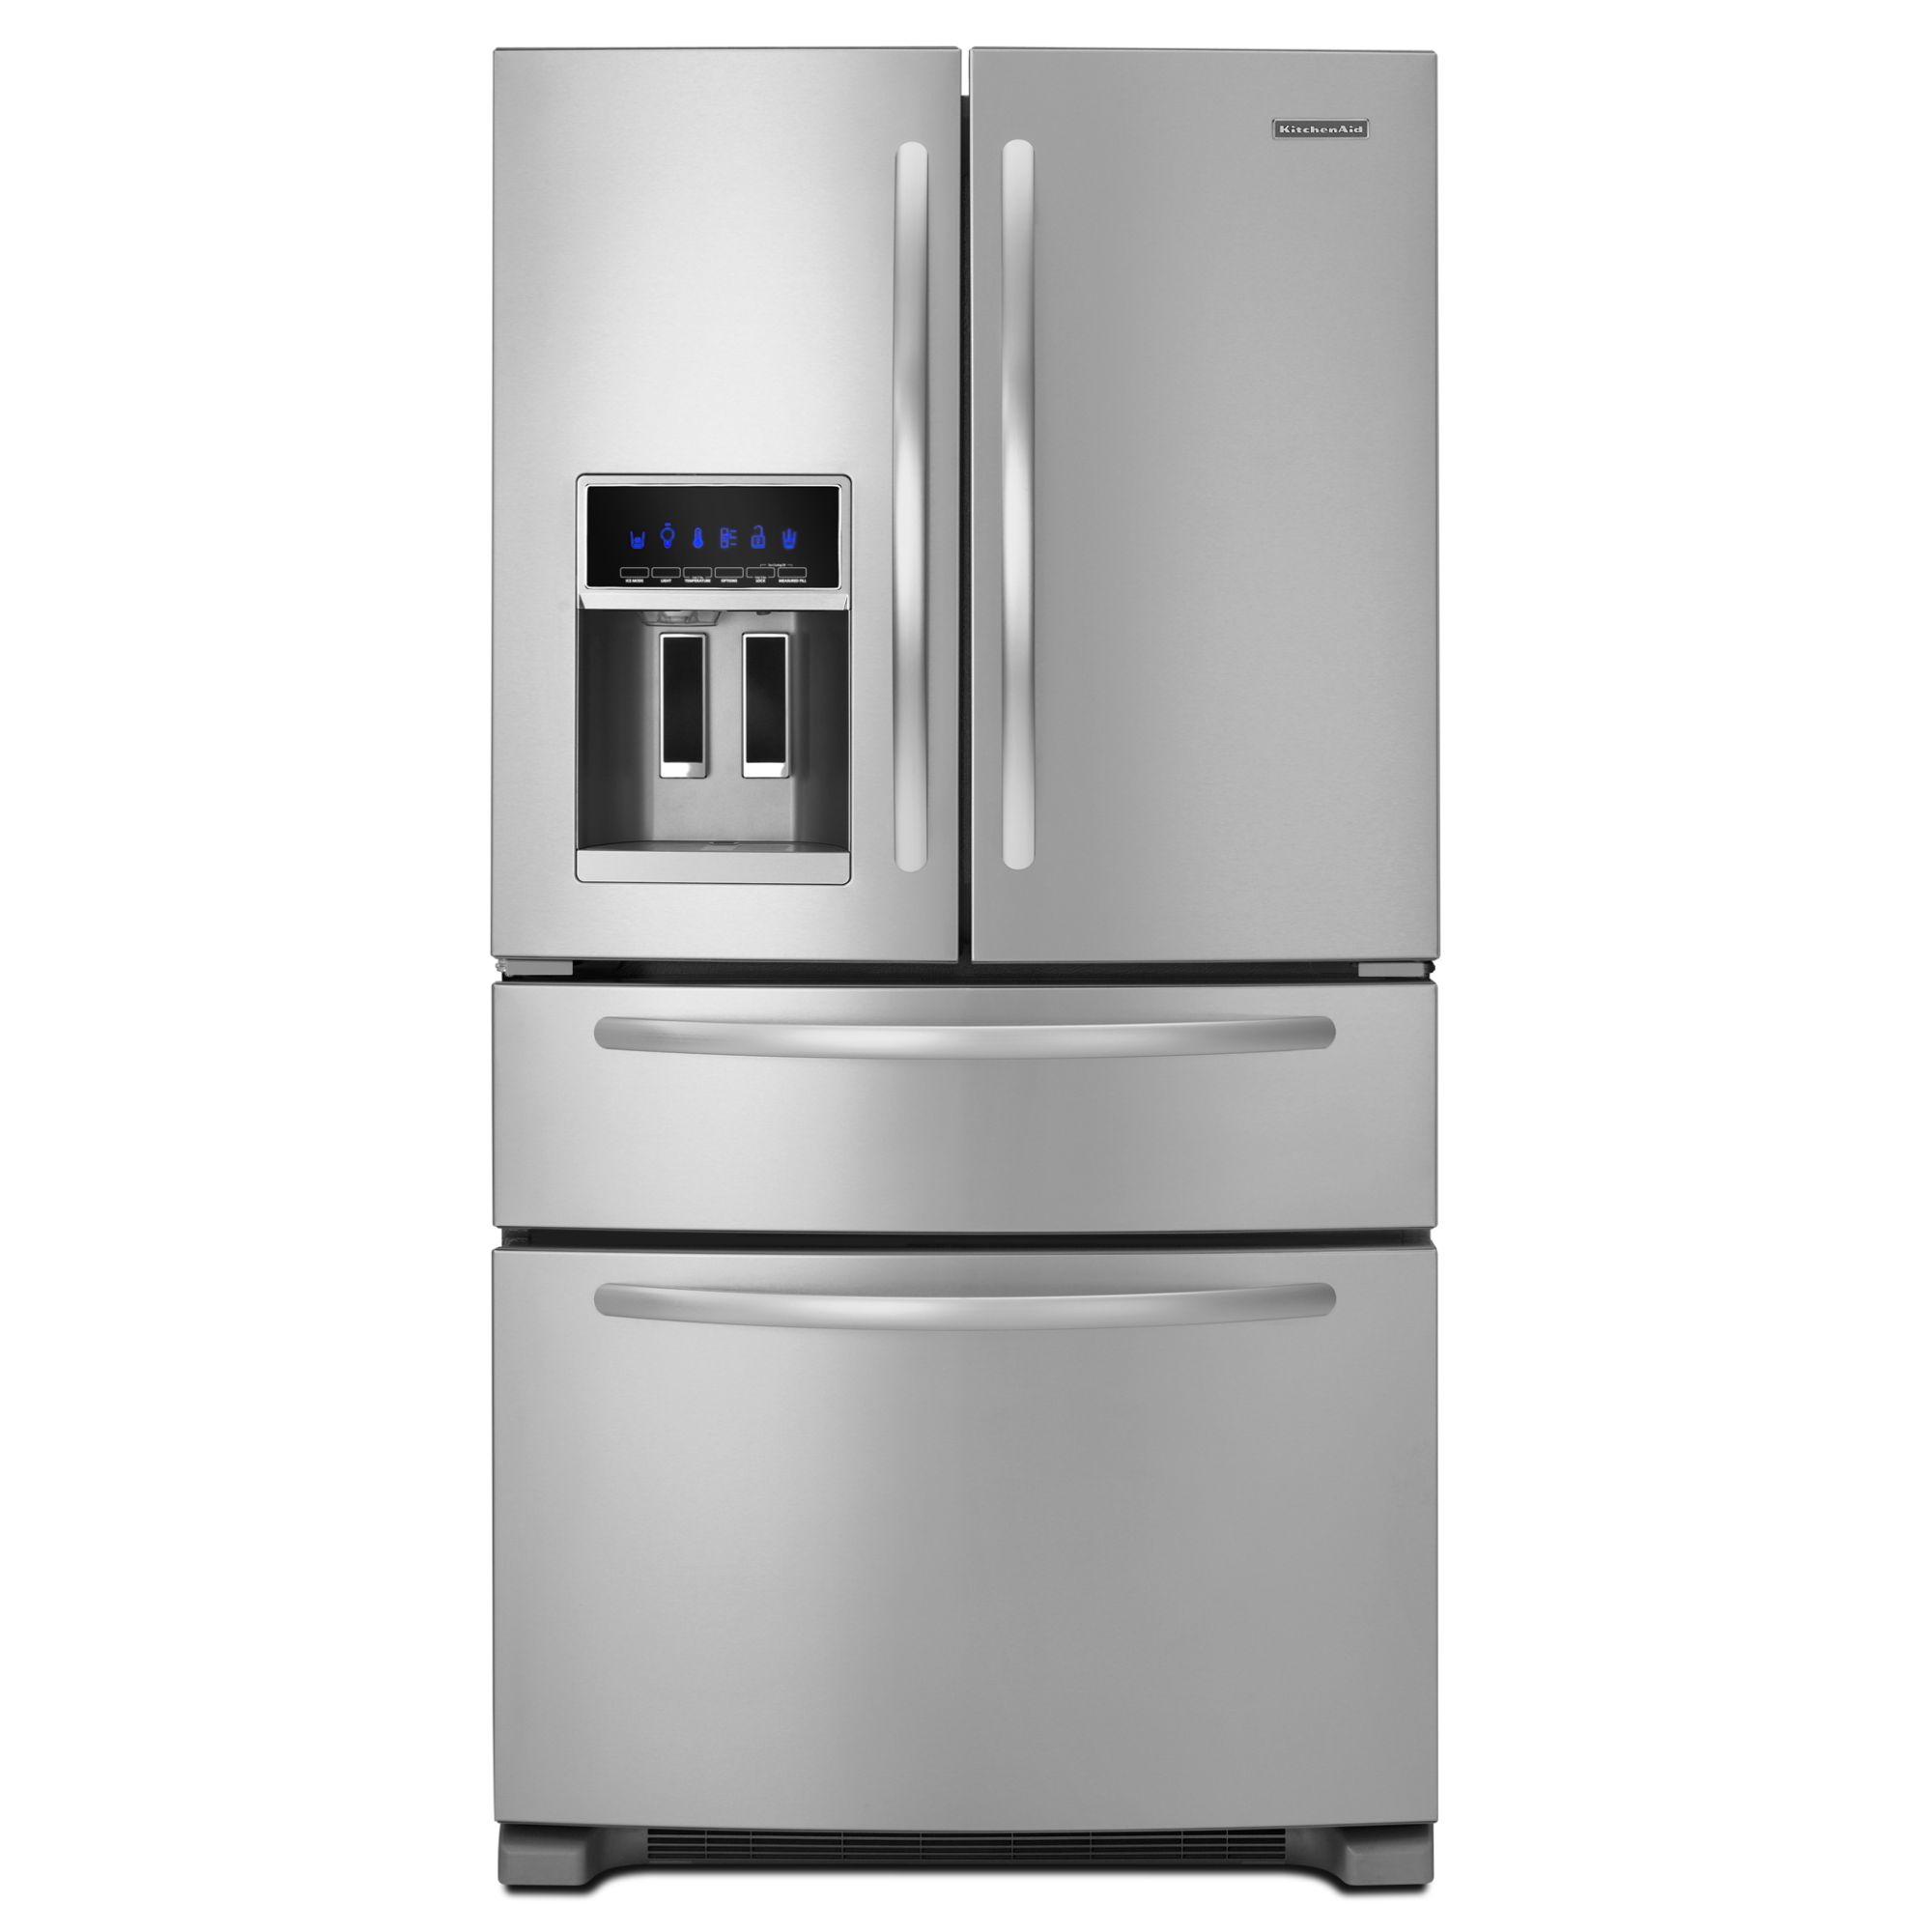 KitchenAid 25.0 cu. ft. French-Door Refrigerator w/ FreshVue Drawer - Stainless Steel